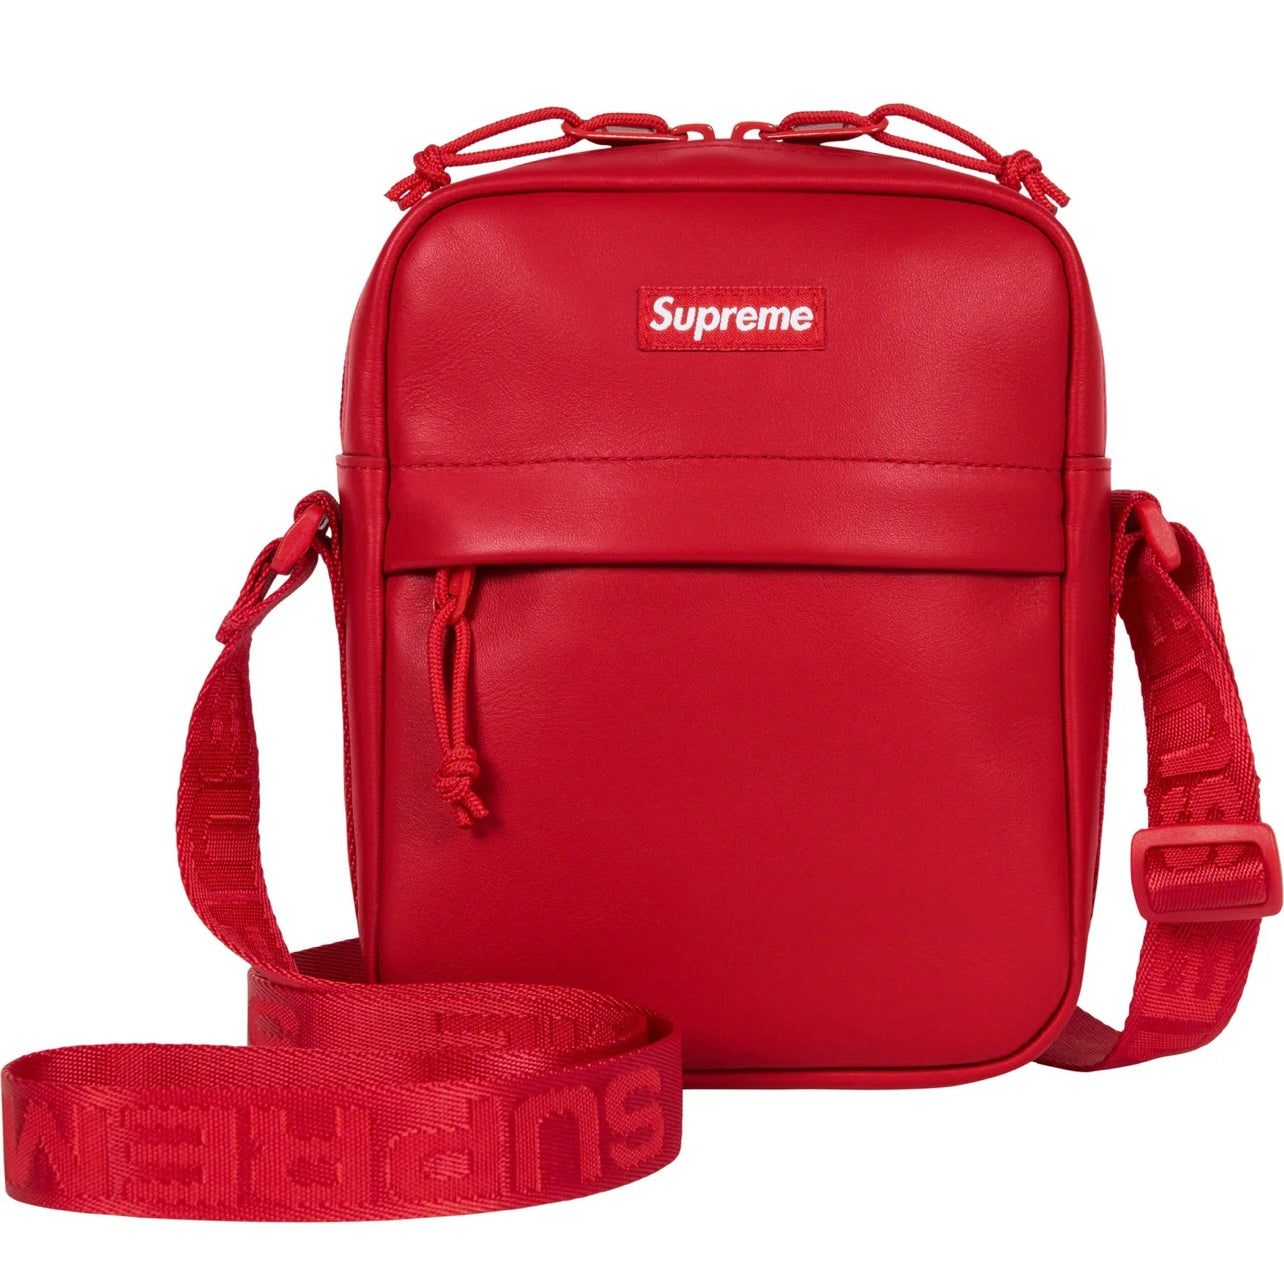 Supreme Leather Shoulder Bag “Red”